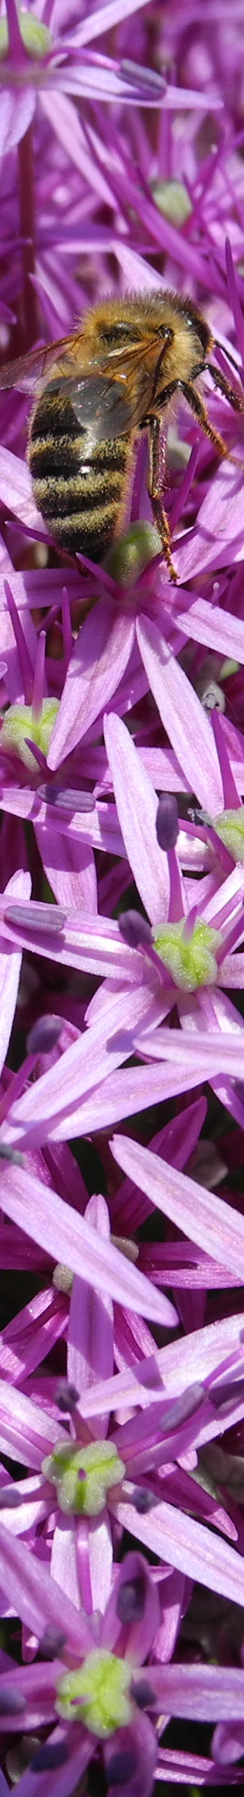 Biene mit violetten Blüten